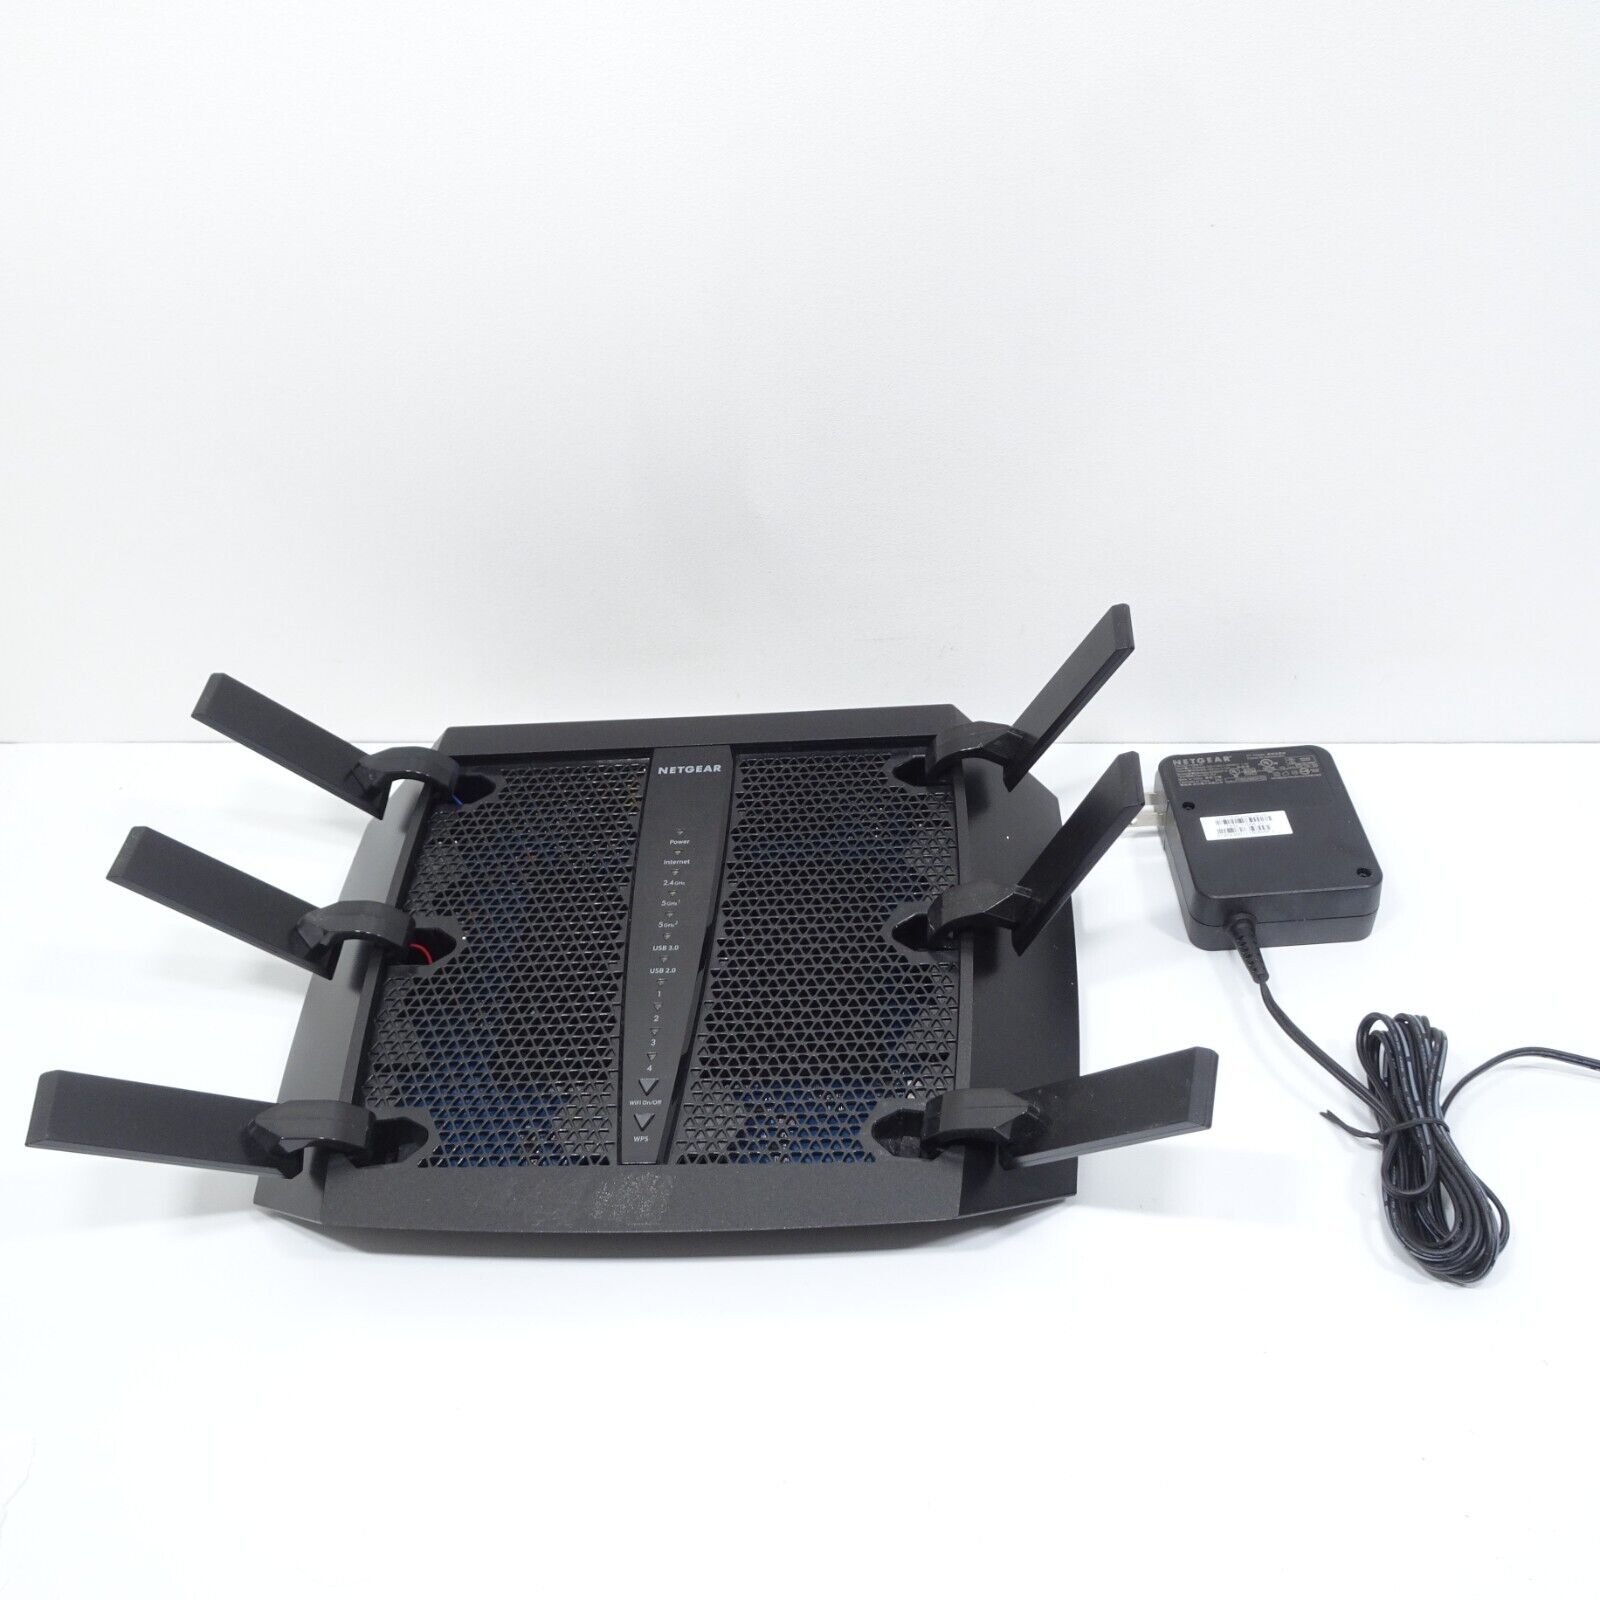 Netgear Nighthawk X6 R8000 AC3200 Tri-Band 4-Port Gigabit Wireless AC Router